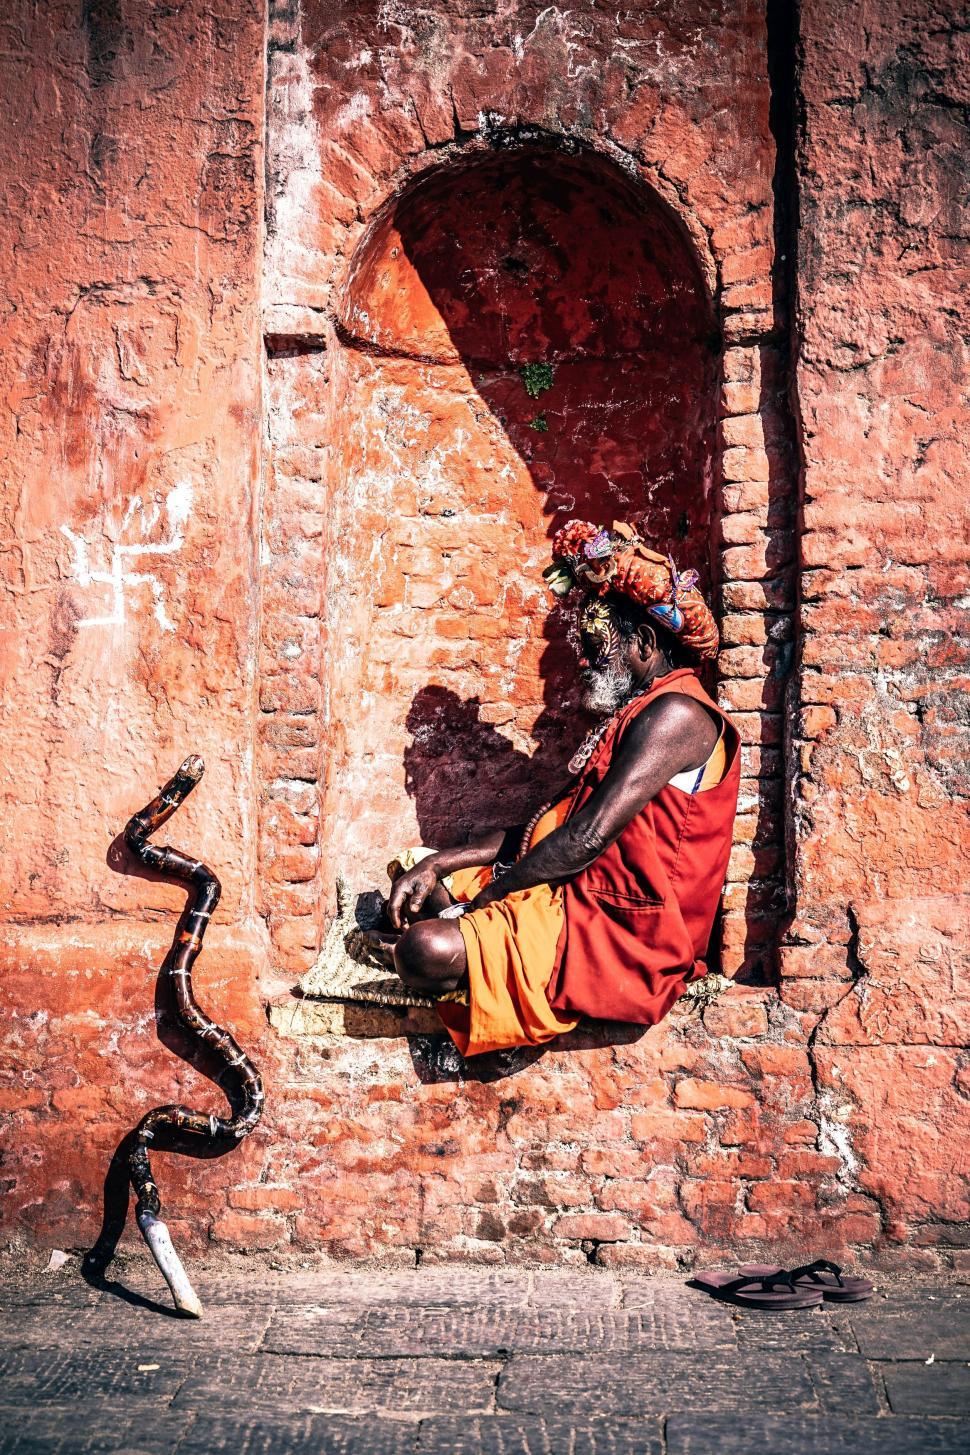 Free Image of Man Sitting on Bench Next to Snake 